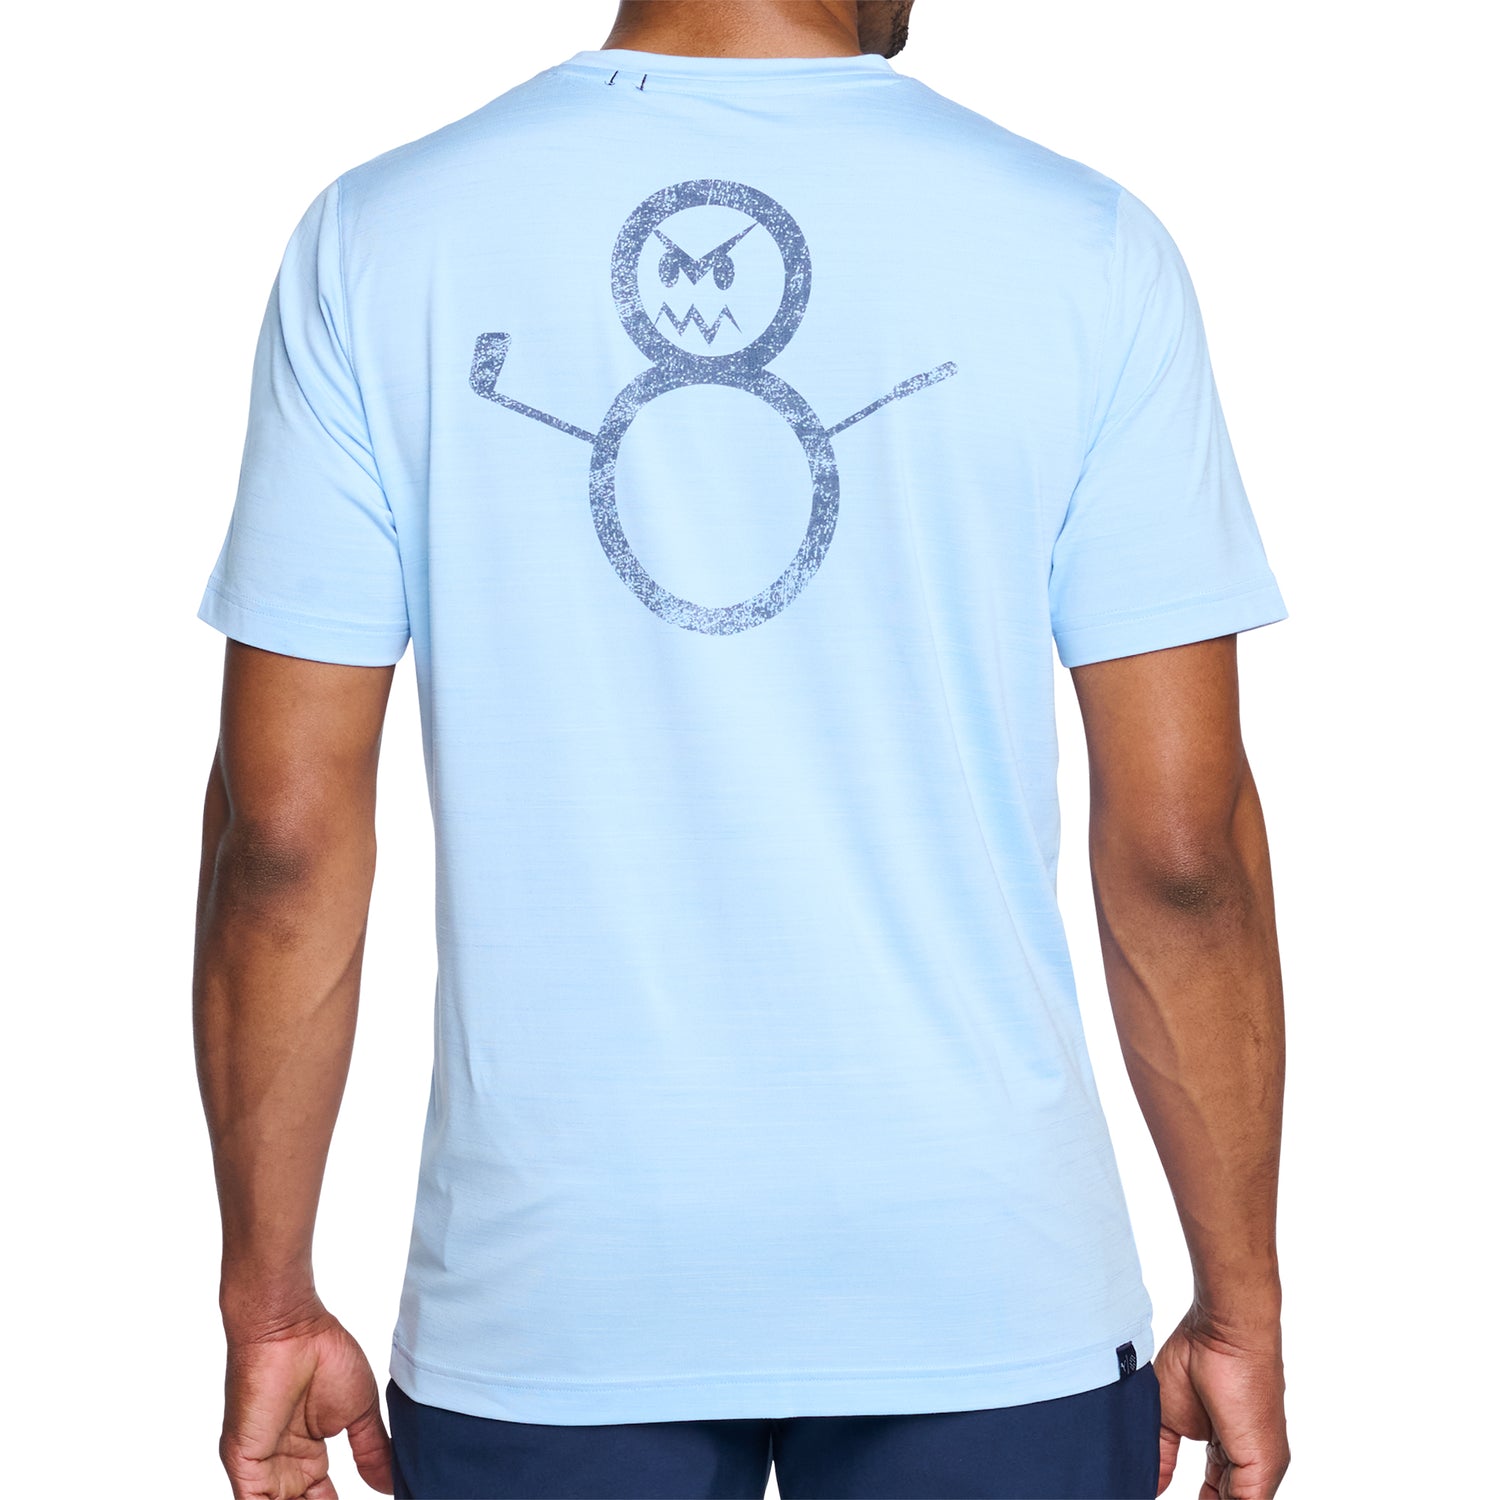 Under Armour Women's Fish Hook Logo T-Shirt